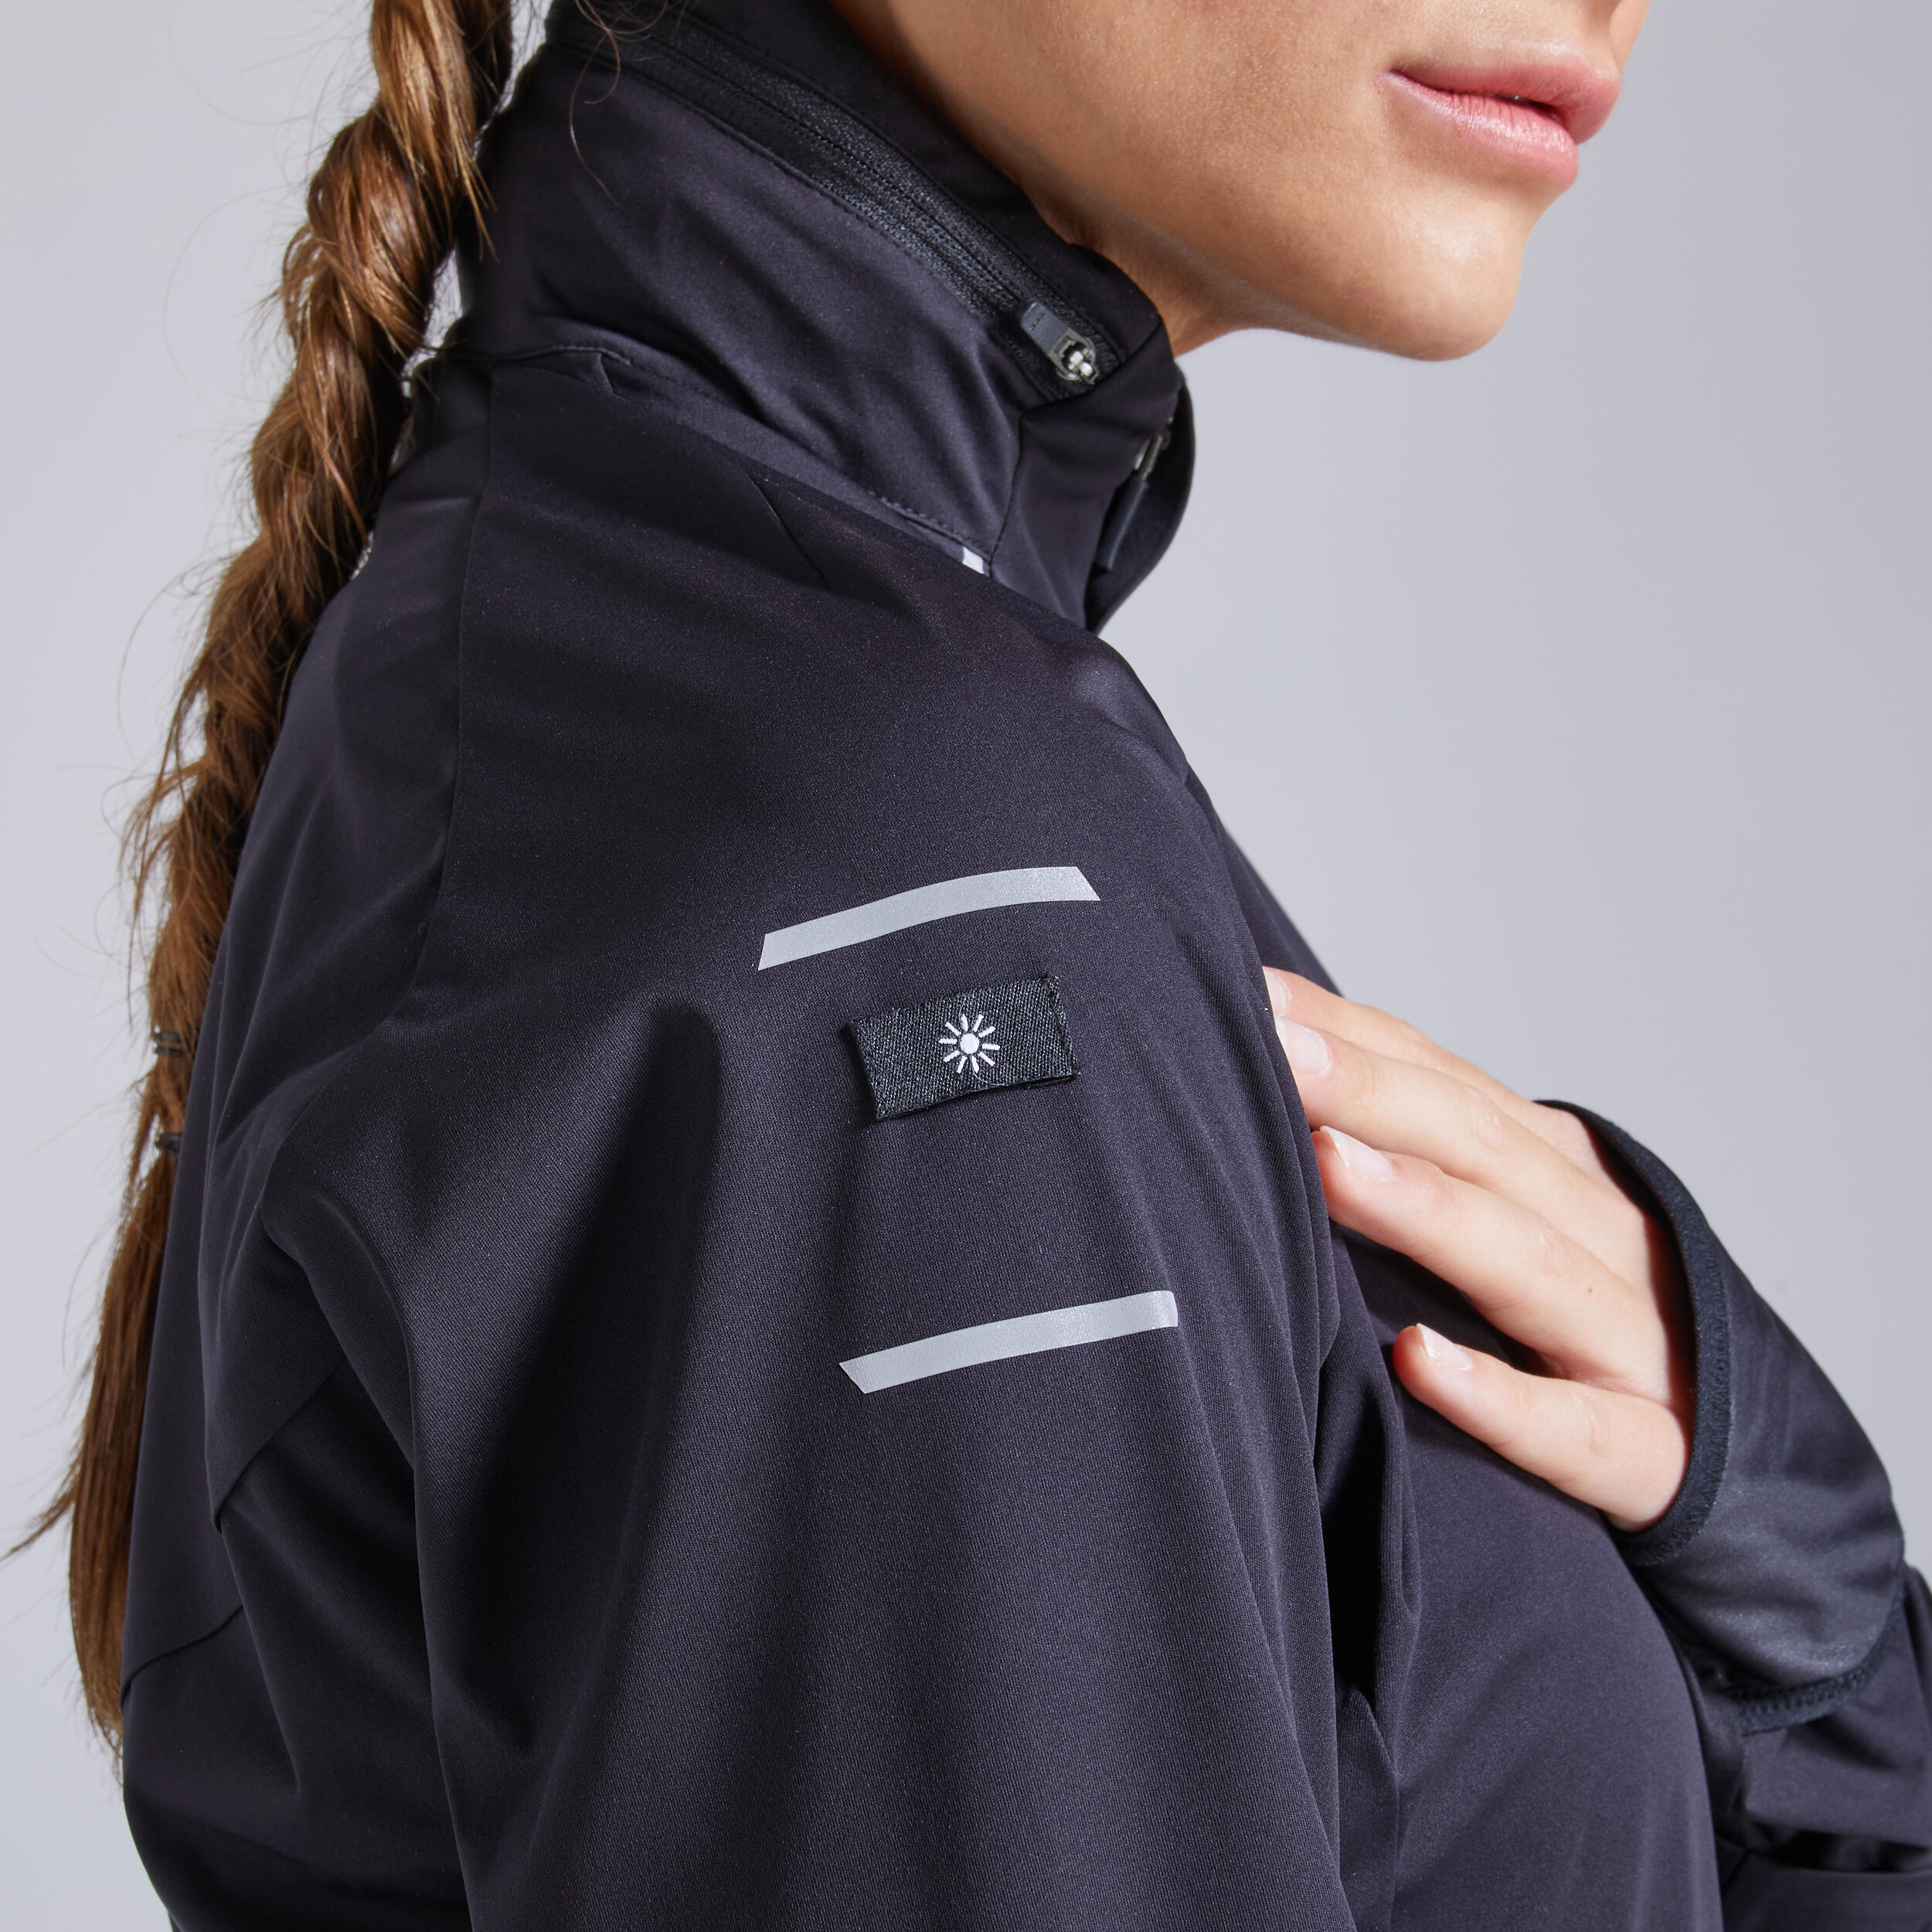 Kiprun Warm Regul Women's Running Water Repellent Windproof Jacket - Black 9/12